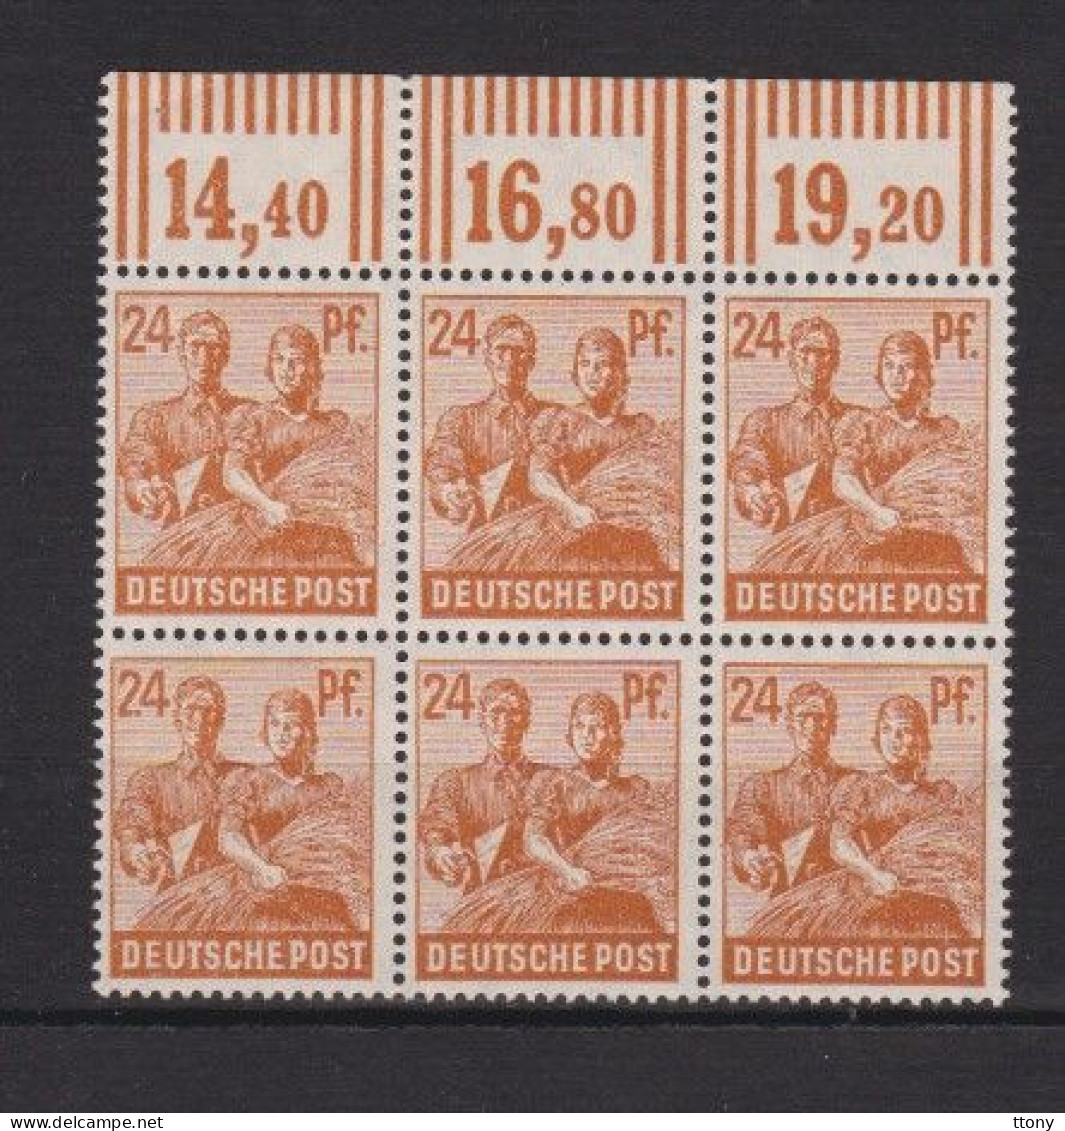 Un Bloc  6 Timbres  1947  24 Pf  N°  951   **   Allemagne   Occupation Alliée   Zone Interalliée AAS   Deutsche Post - Mint